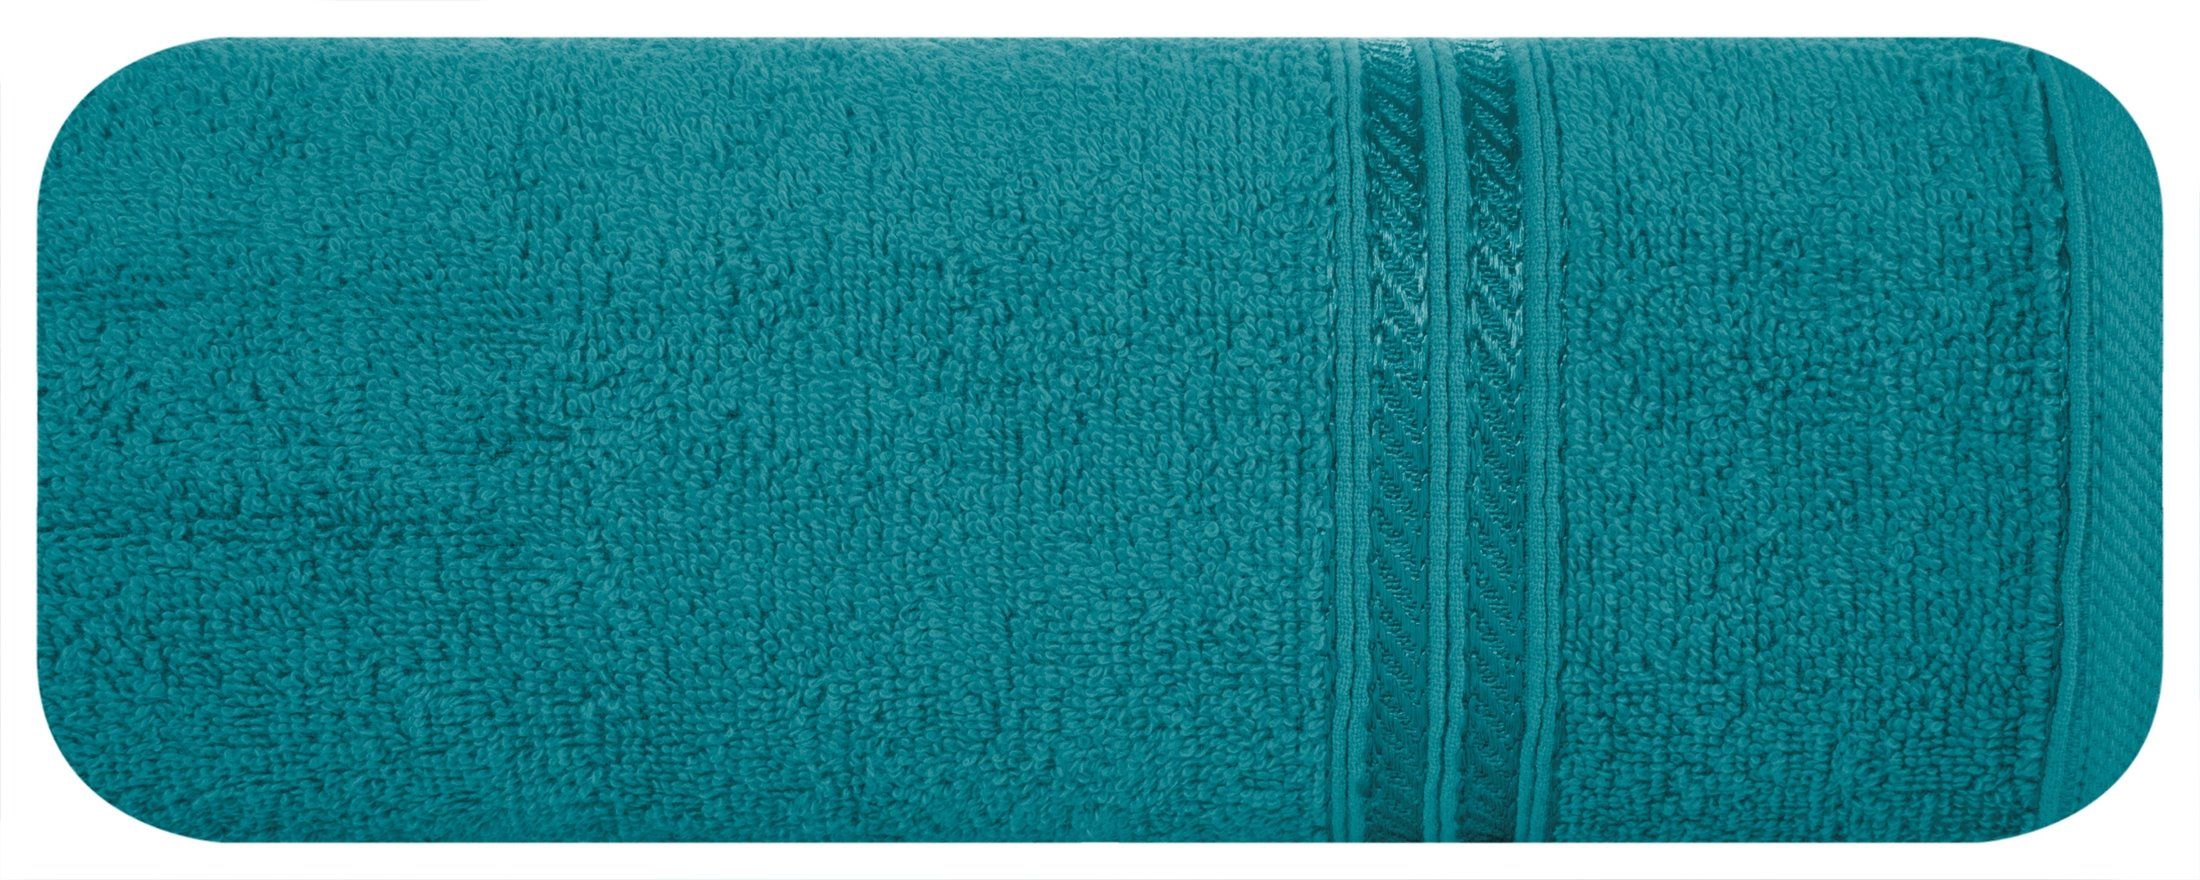 Ręcznik Lori 50x90 turkusowy jasny 450g/m2